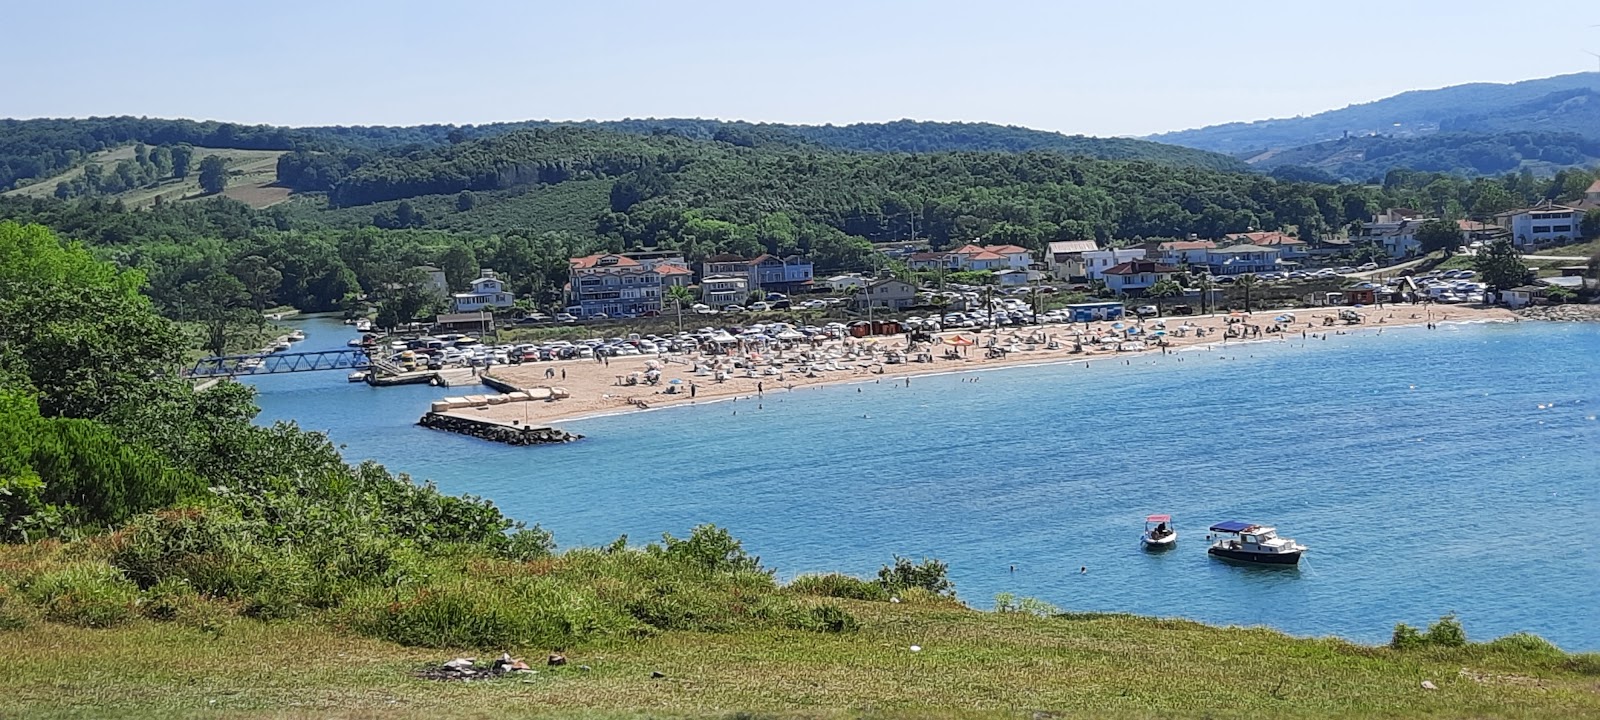 Seyrek Plaji'in fotoğrafı ve yerleşim